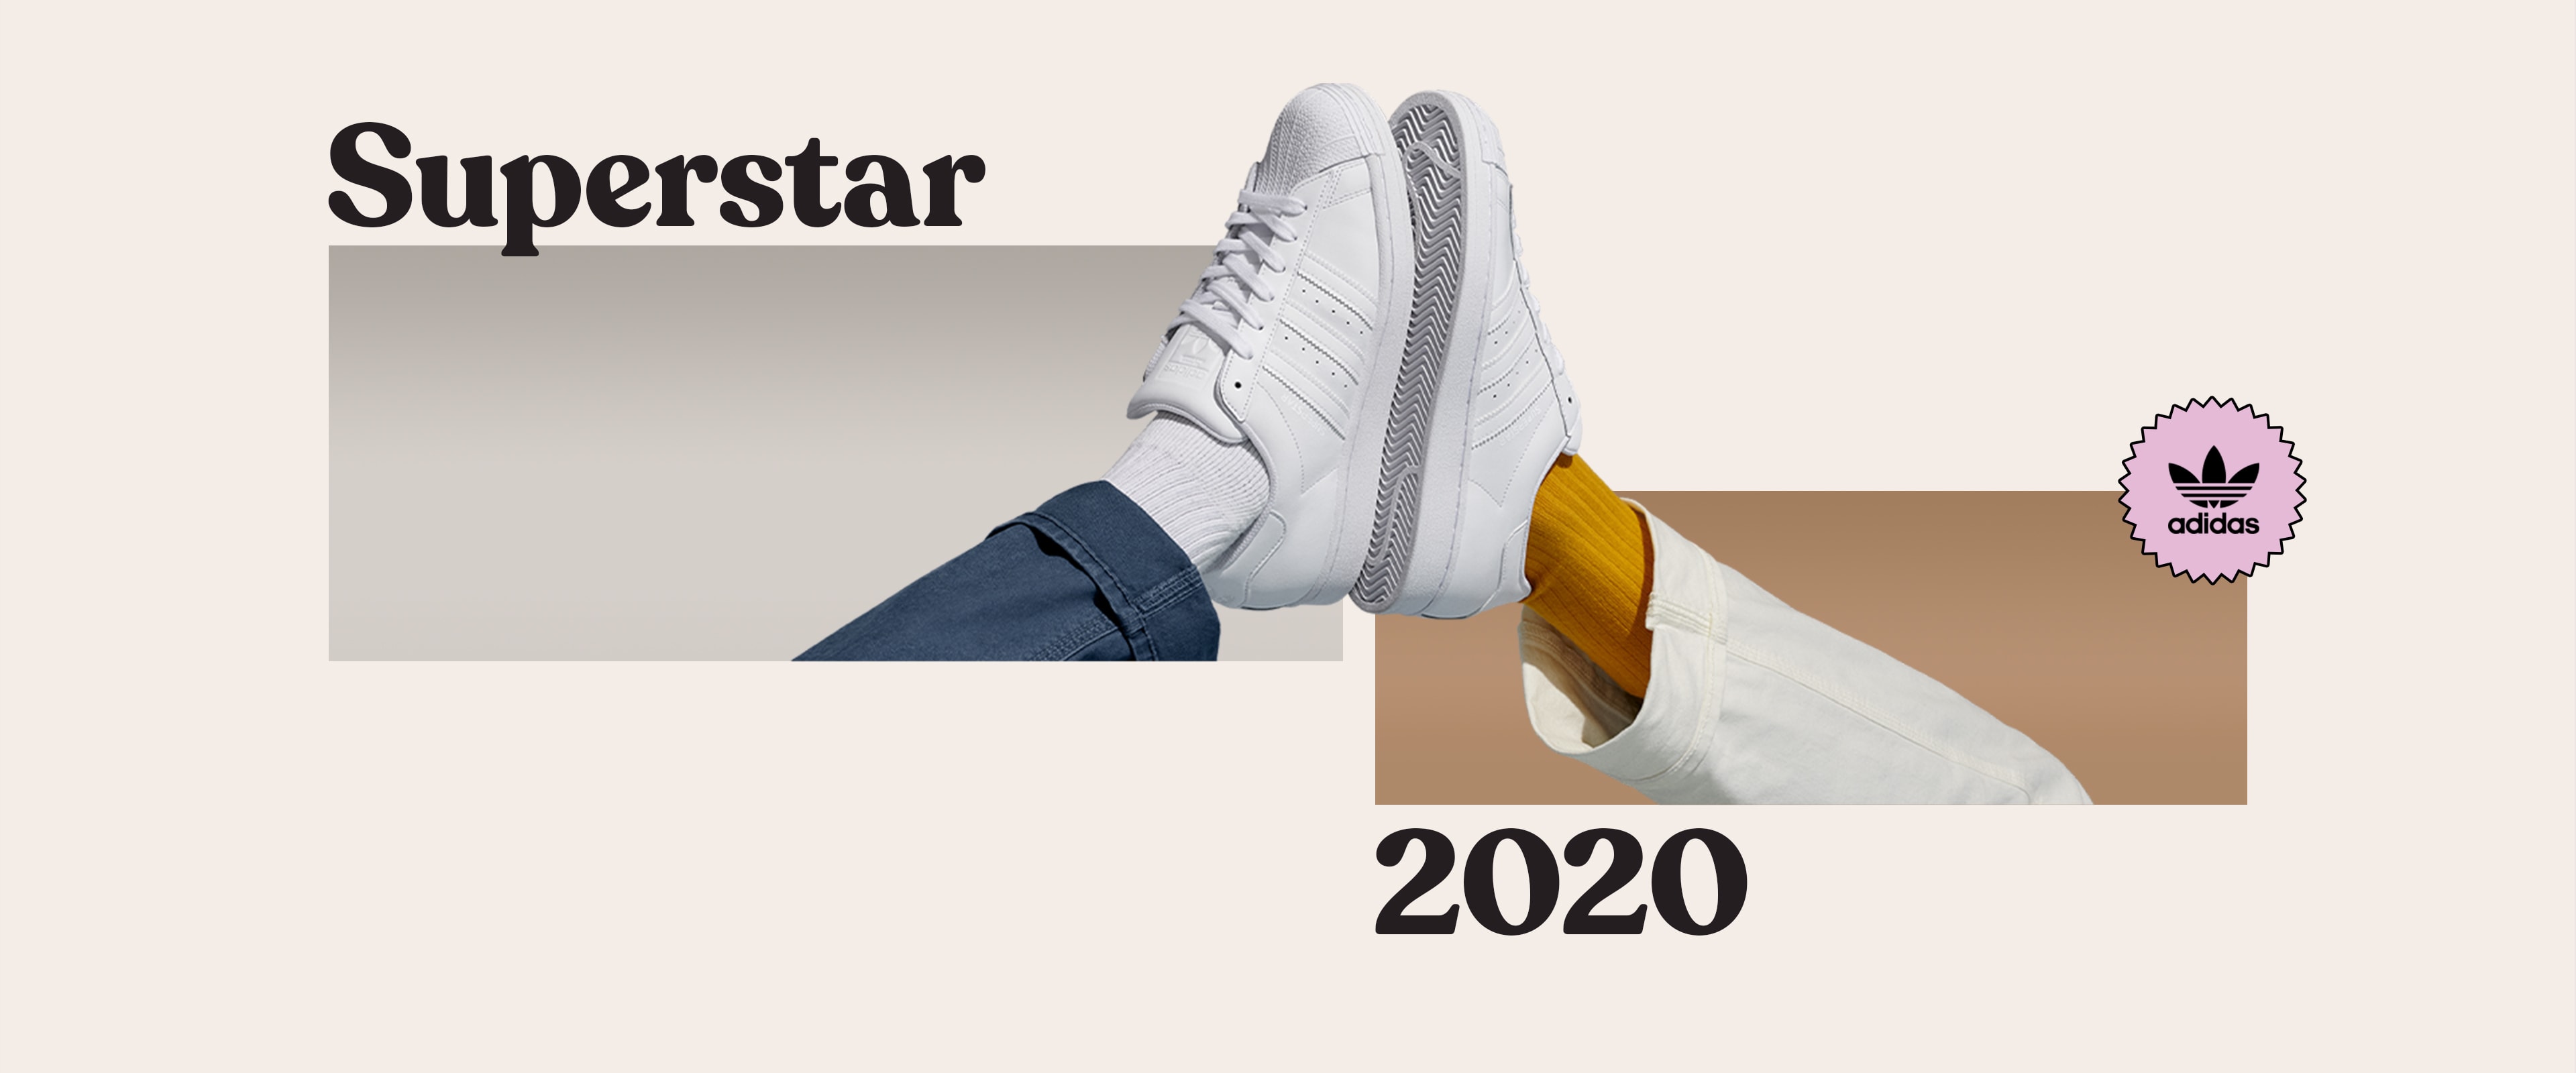 SUPERSTAR 2020 | adidas Italia